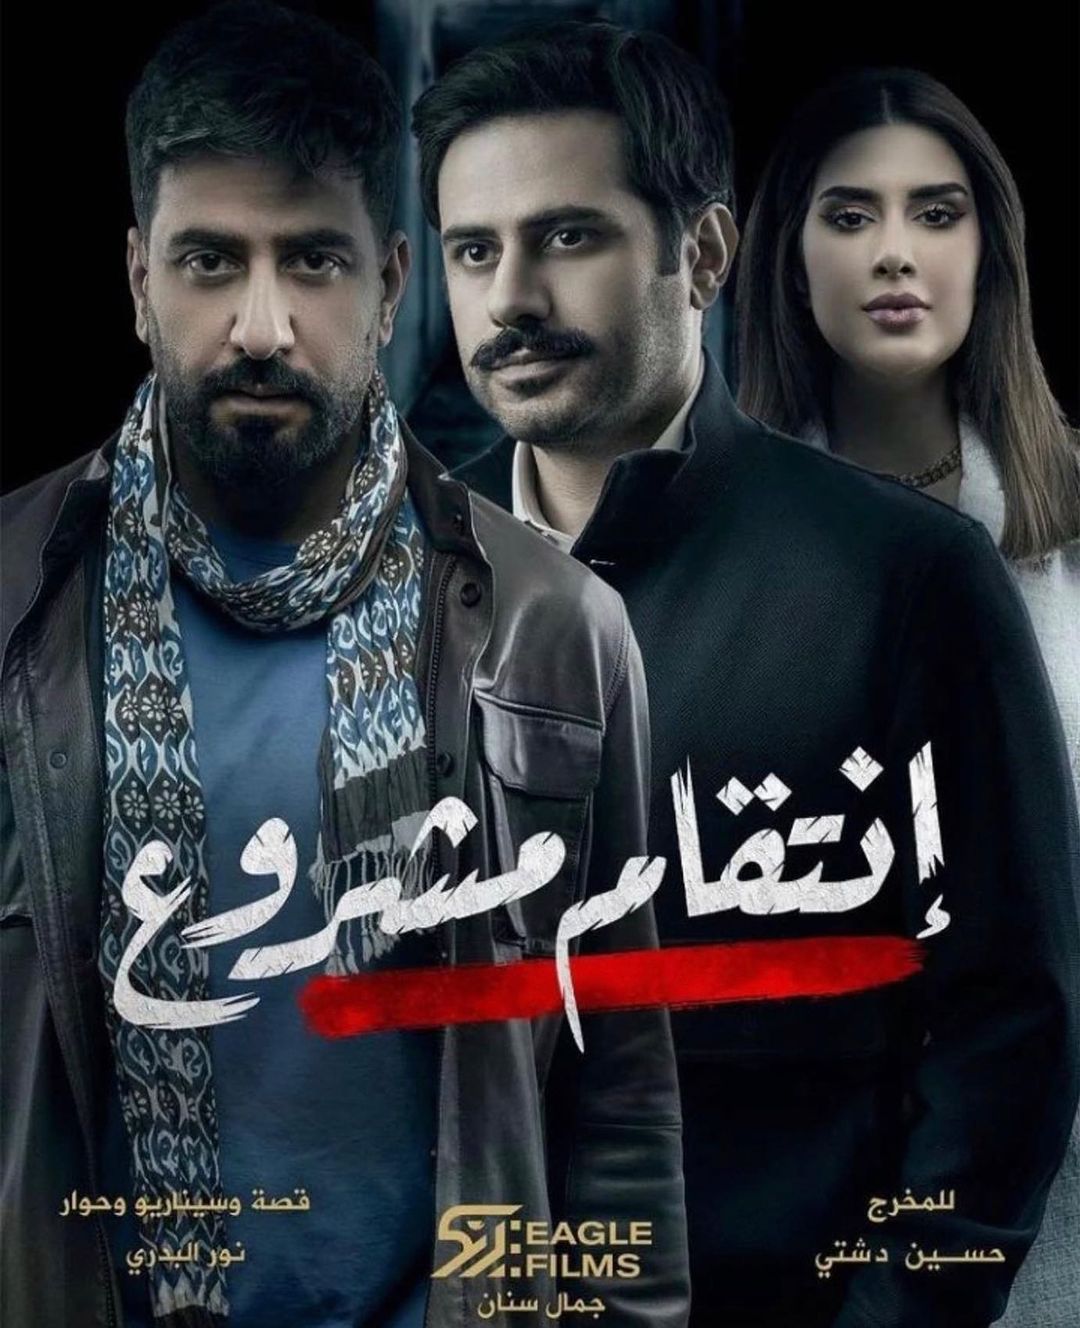 حسين دشتي يكشف سبب نداح مسلسل "انتقام مشروع"